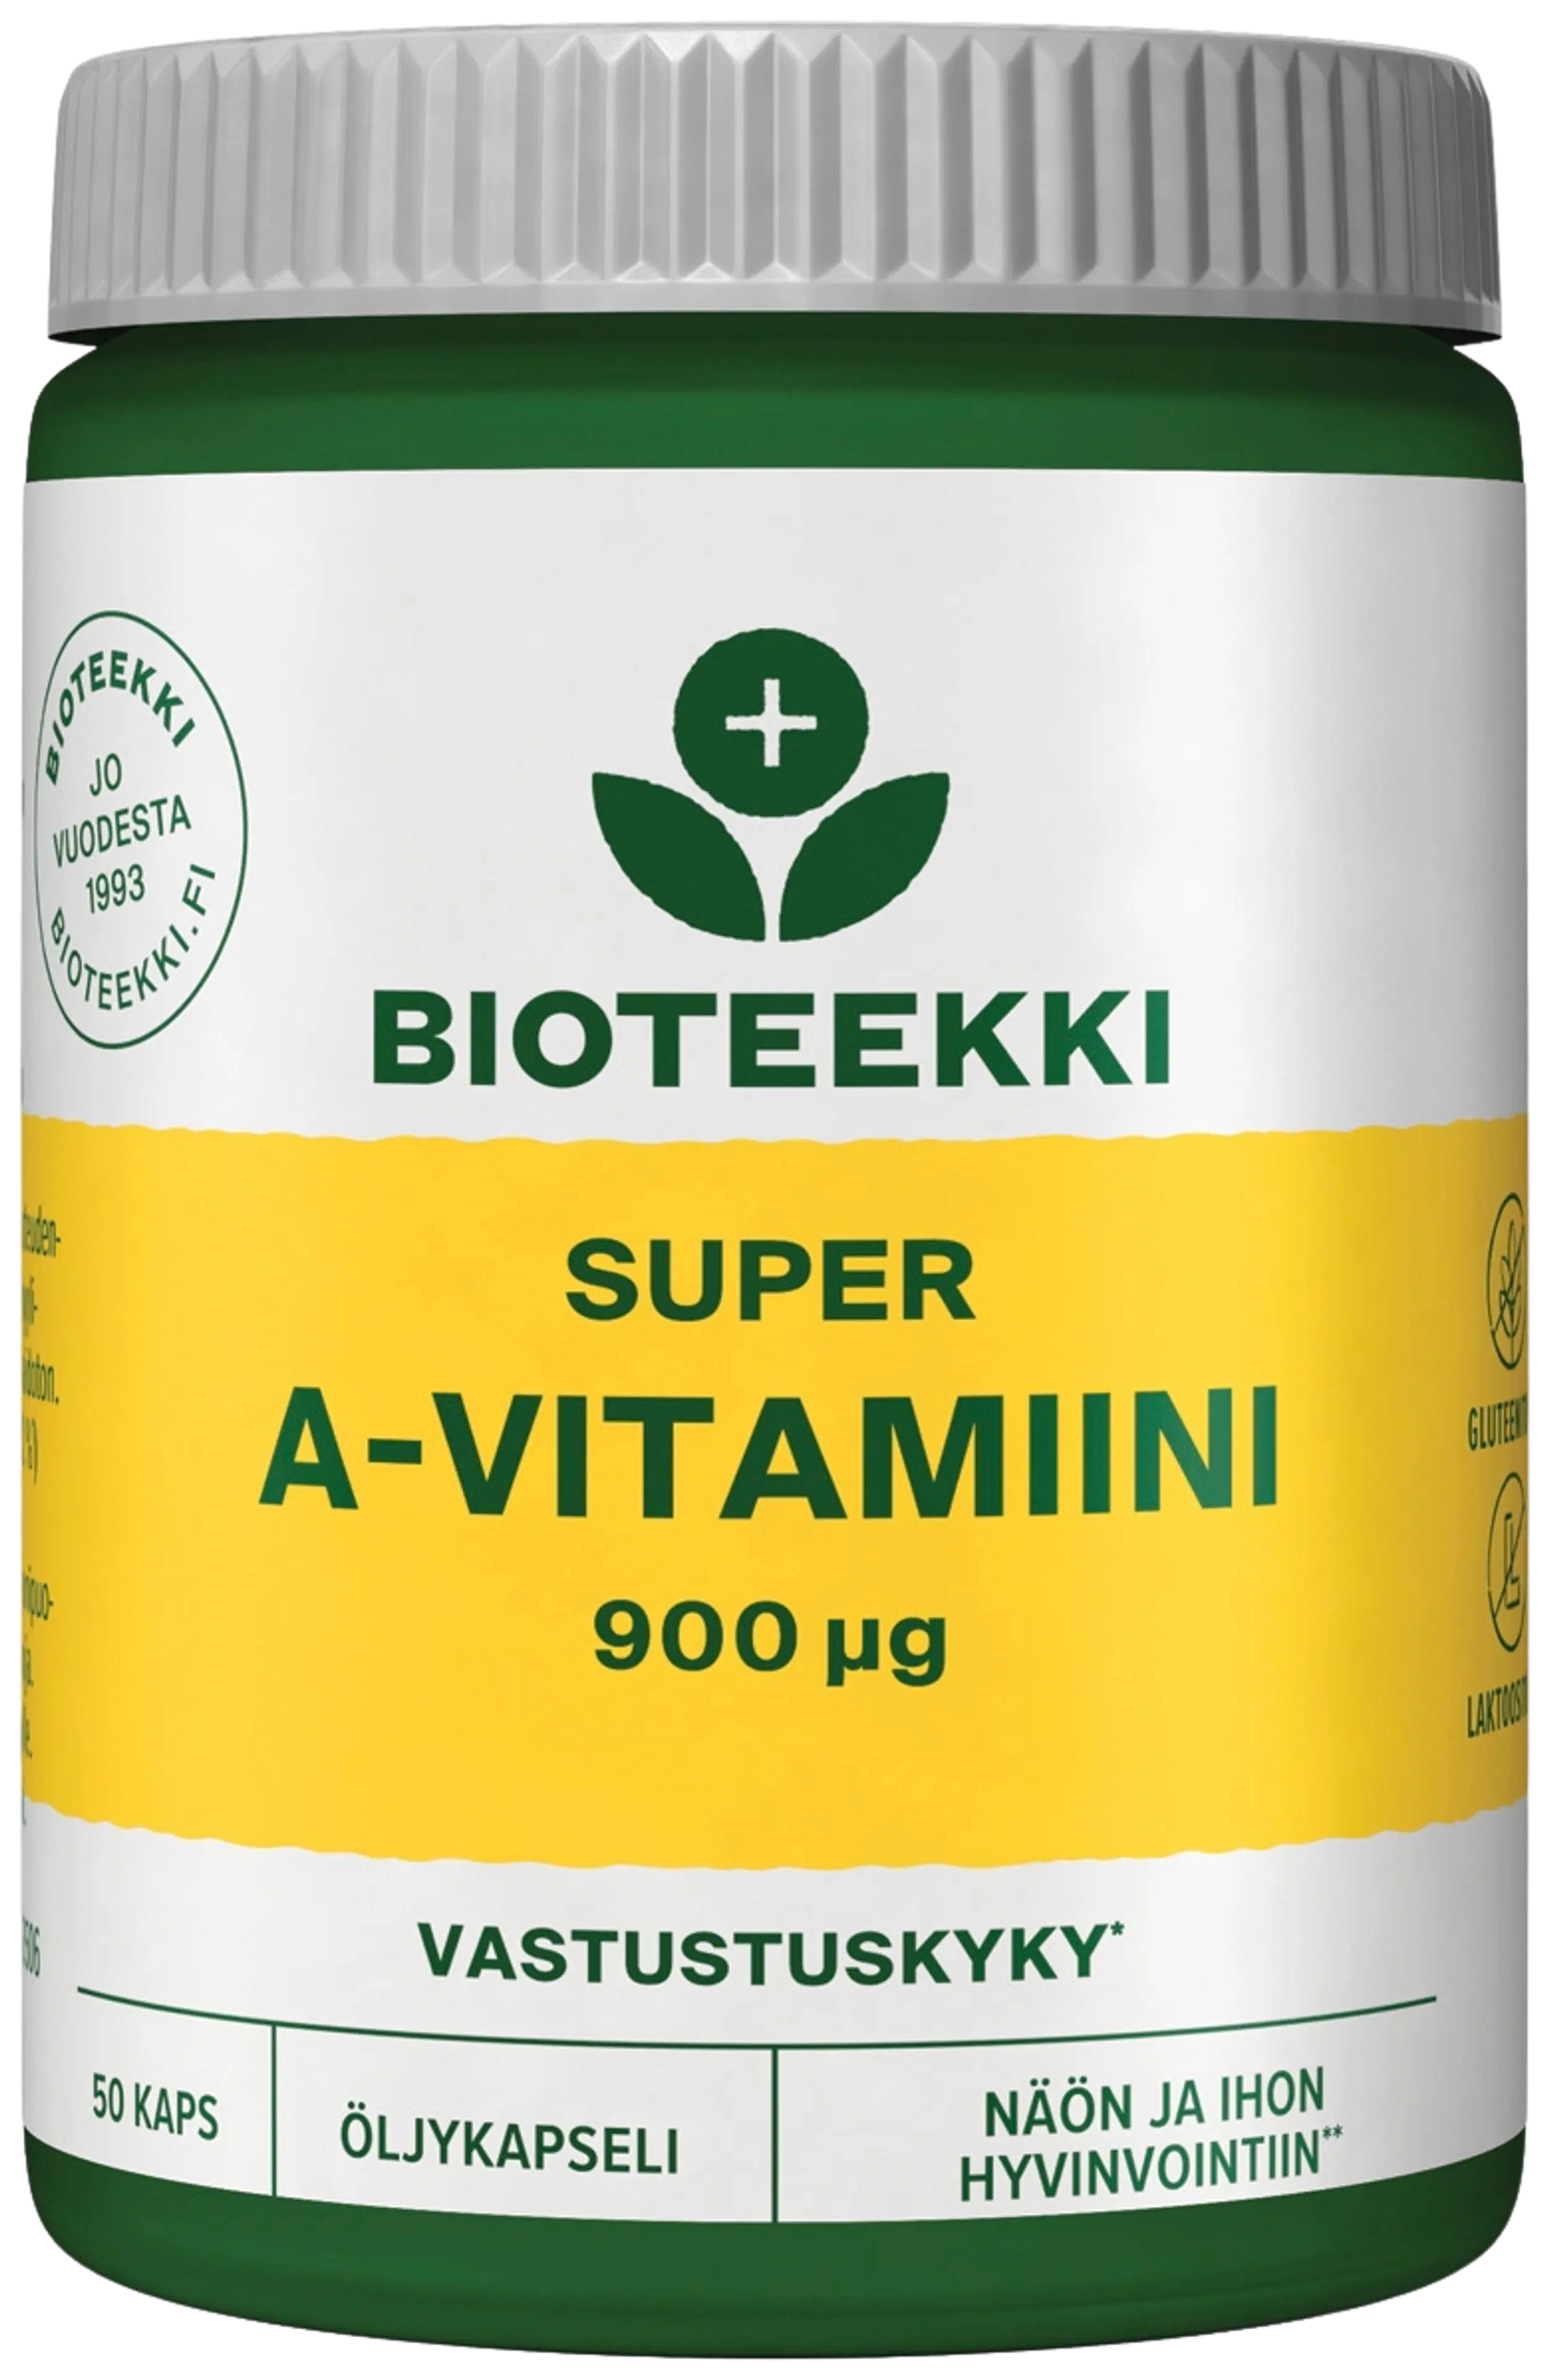 Bioteekki Super A-vitamiini ravintolisä 50 kaps.